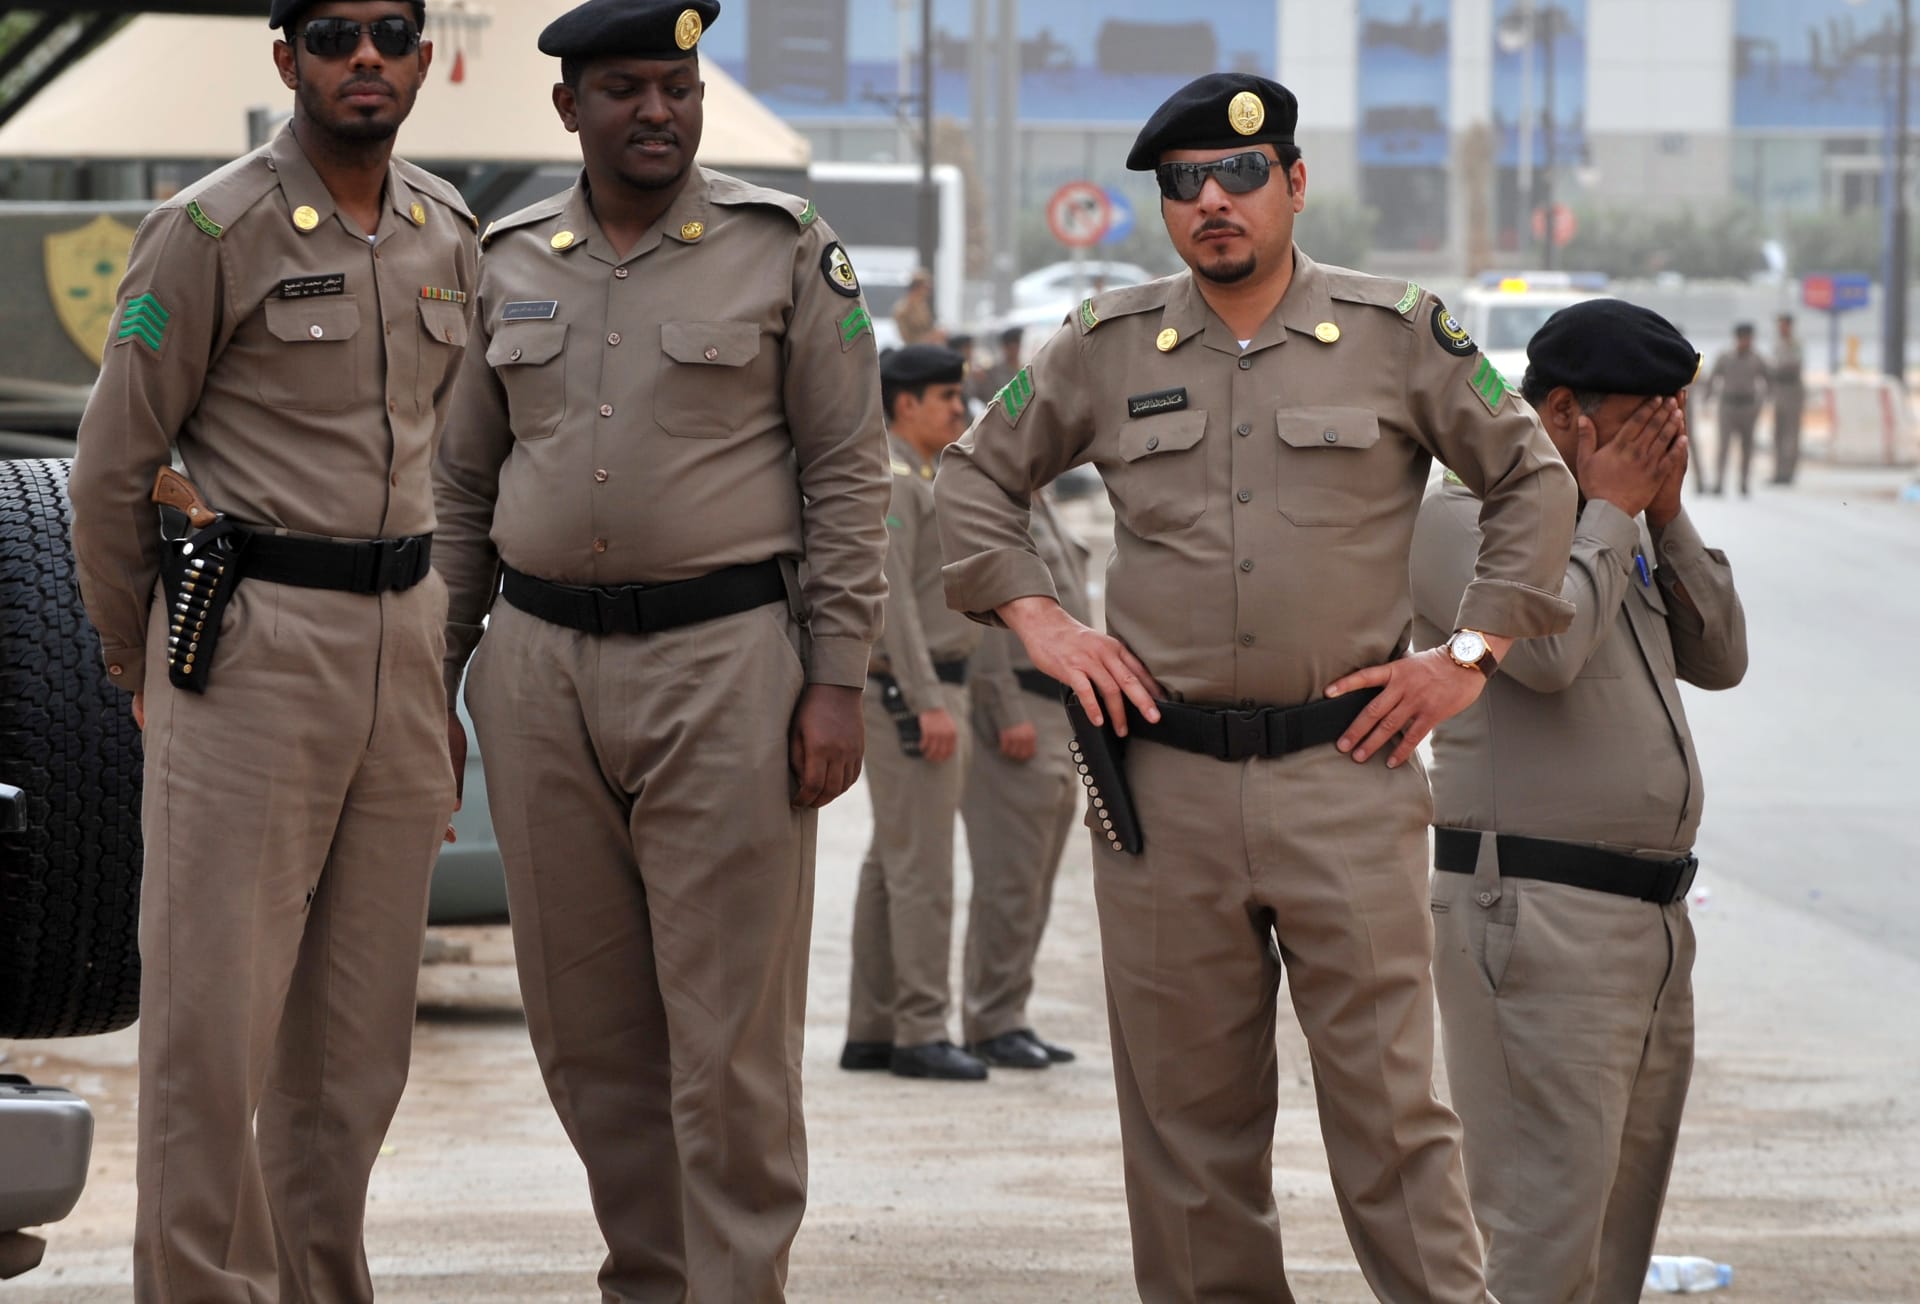 "سرقوا مركبات ولوحات لاستخدامها في جرائمهم".. الأمن السعودي يعلن اعتقال 3 مواطنين روجوا المخدرات بالرياض